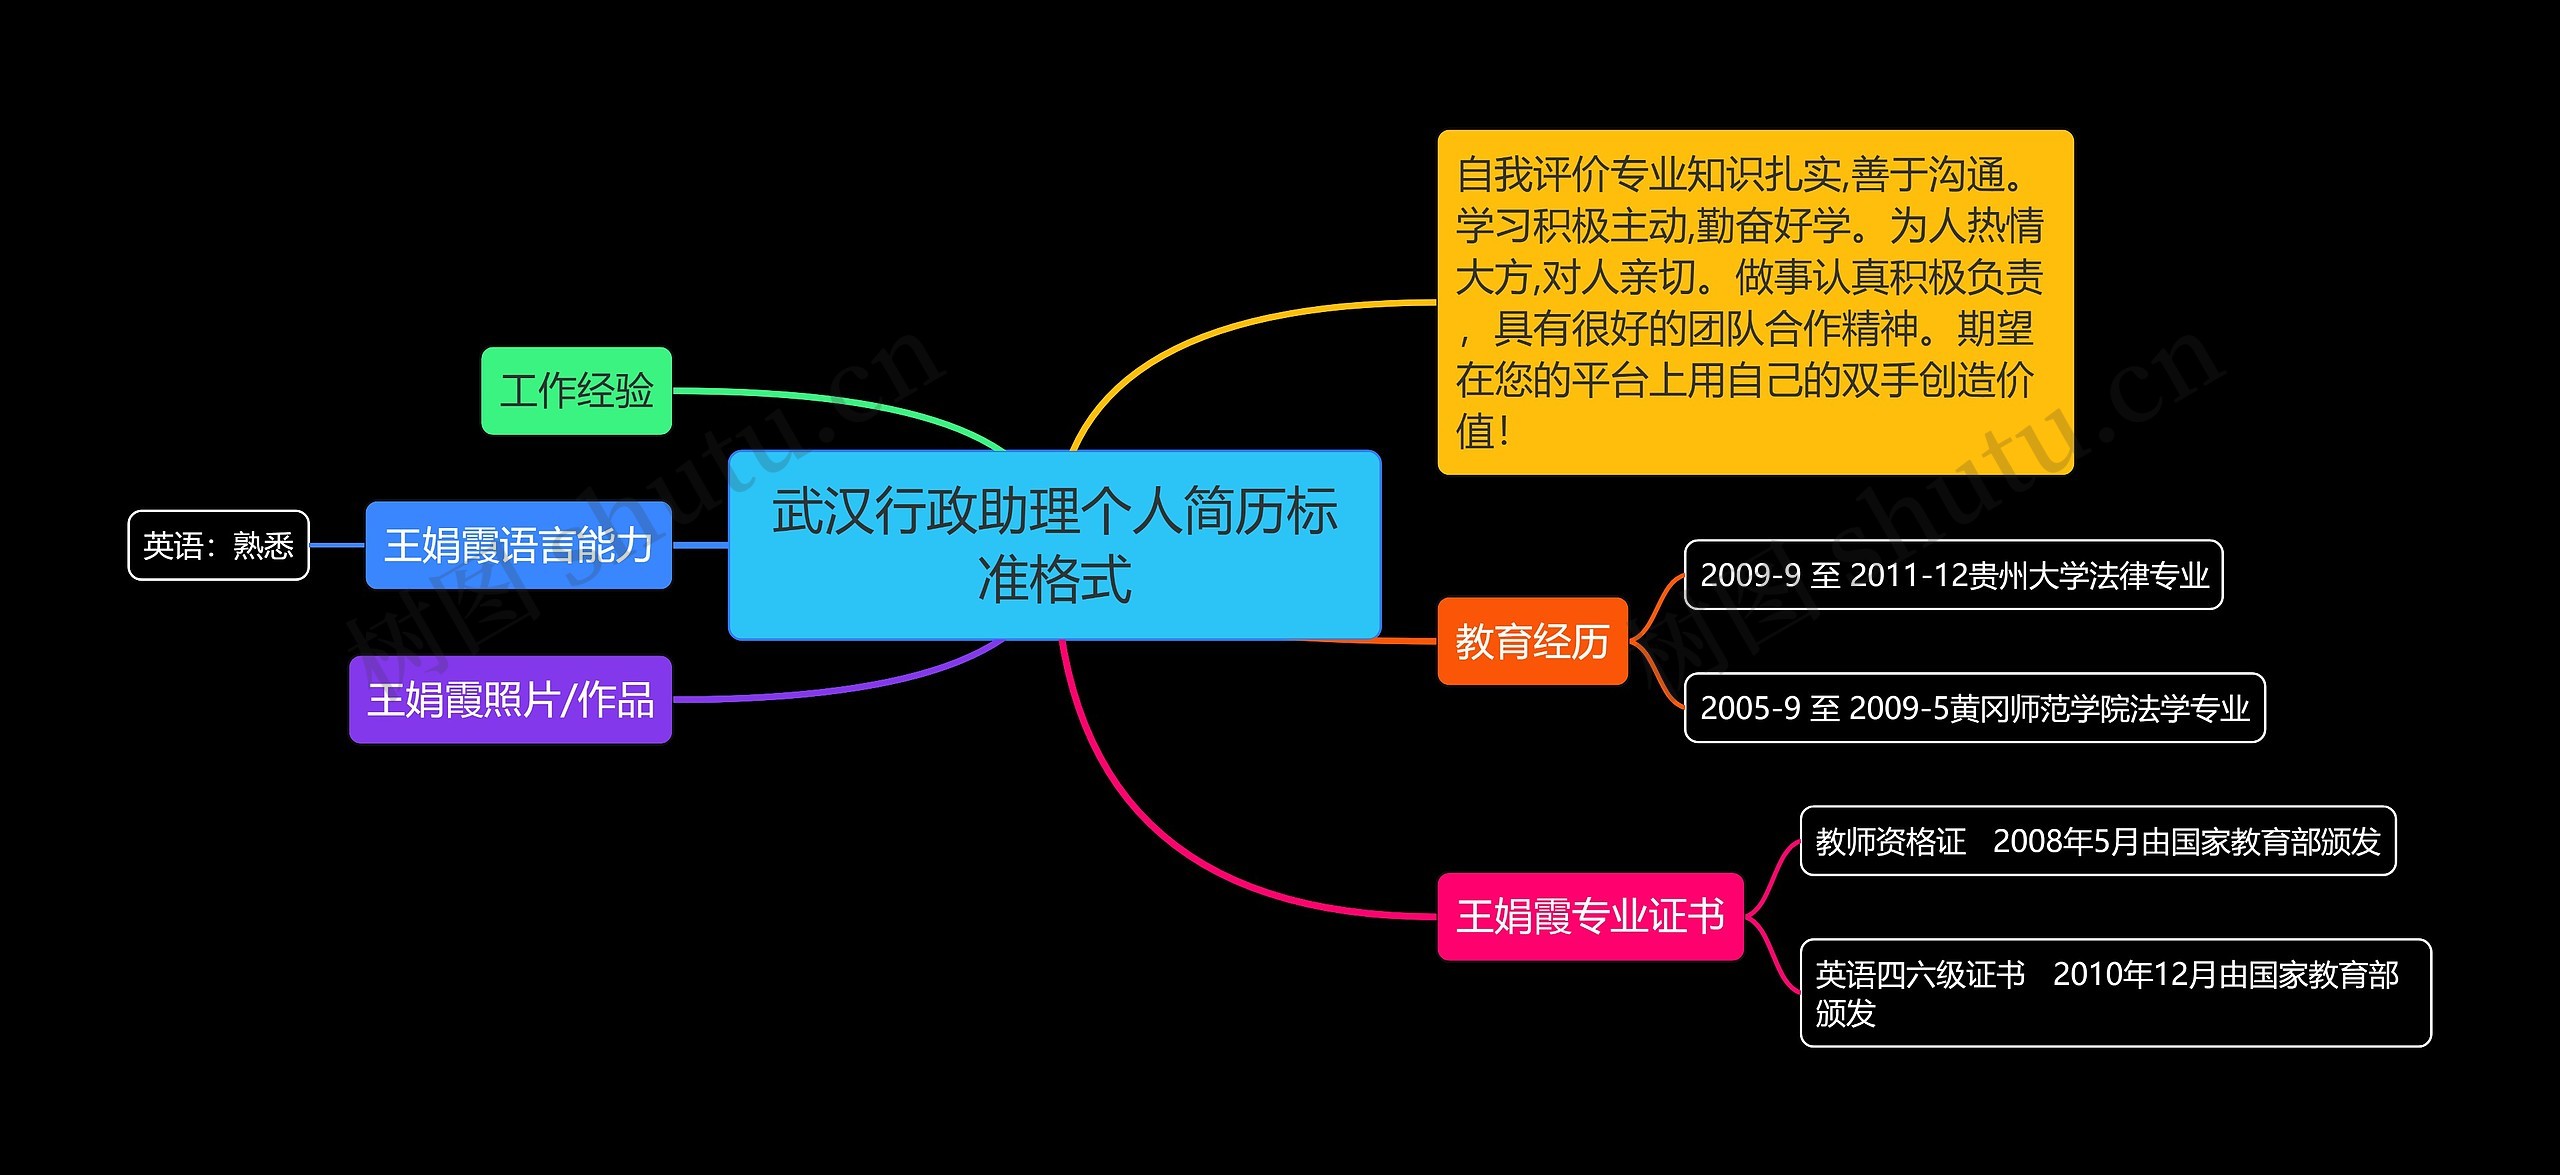 武汉行政助理个人简历标准格式思维导图